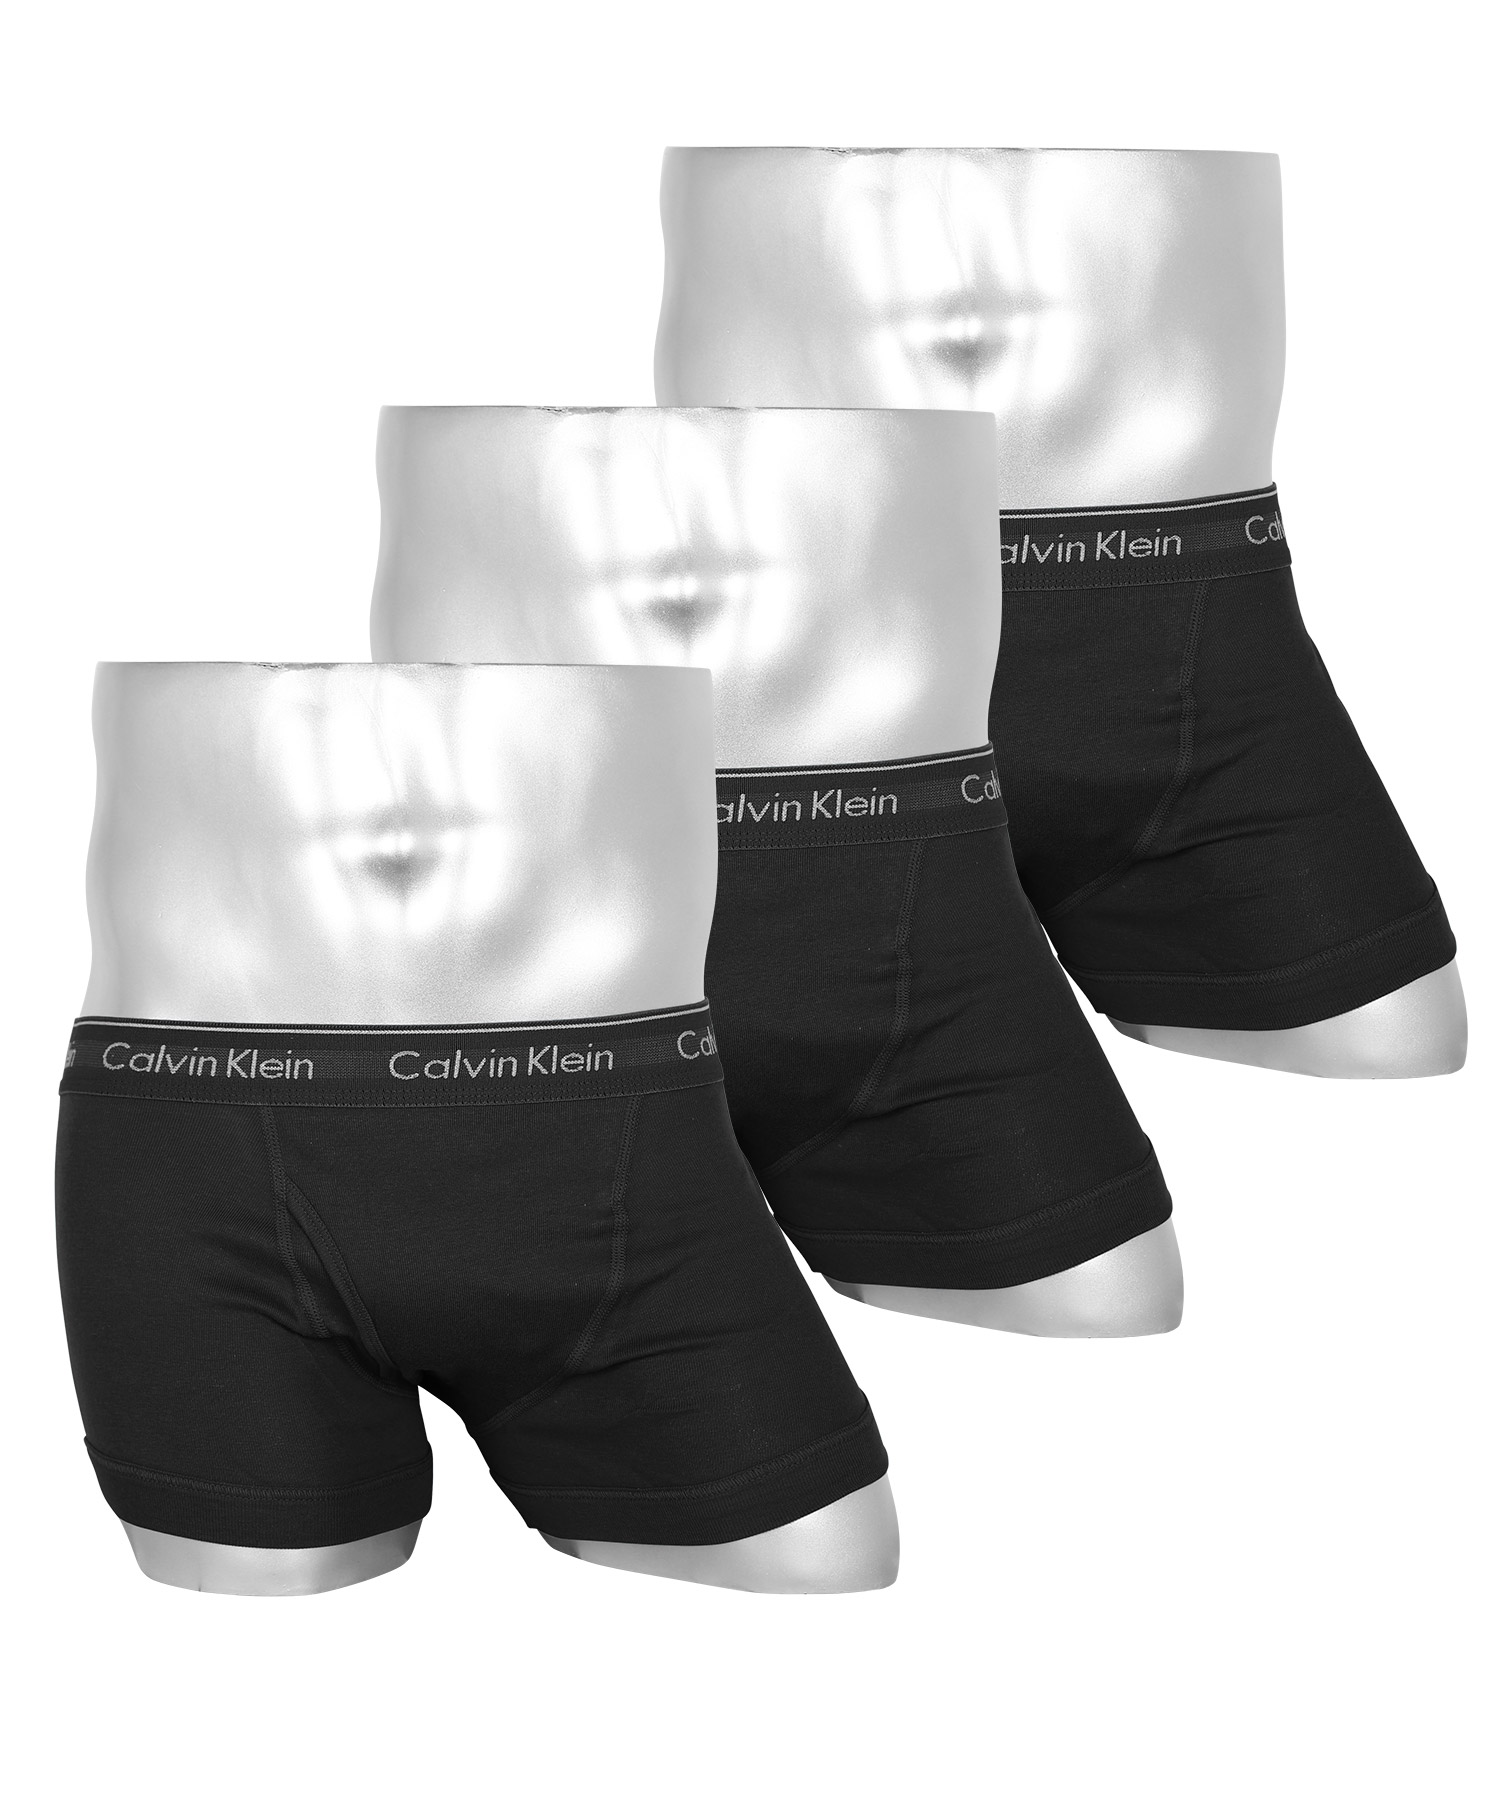 カルバンクライン ボクサーパンツ 3枚セット メンズ Calvin Klein アンダーウェア 男性...